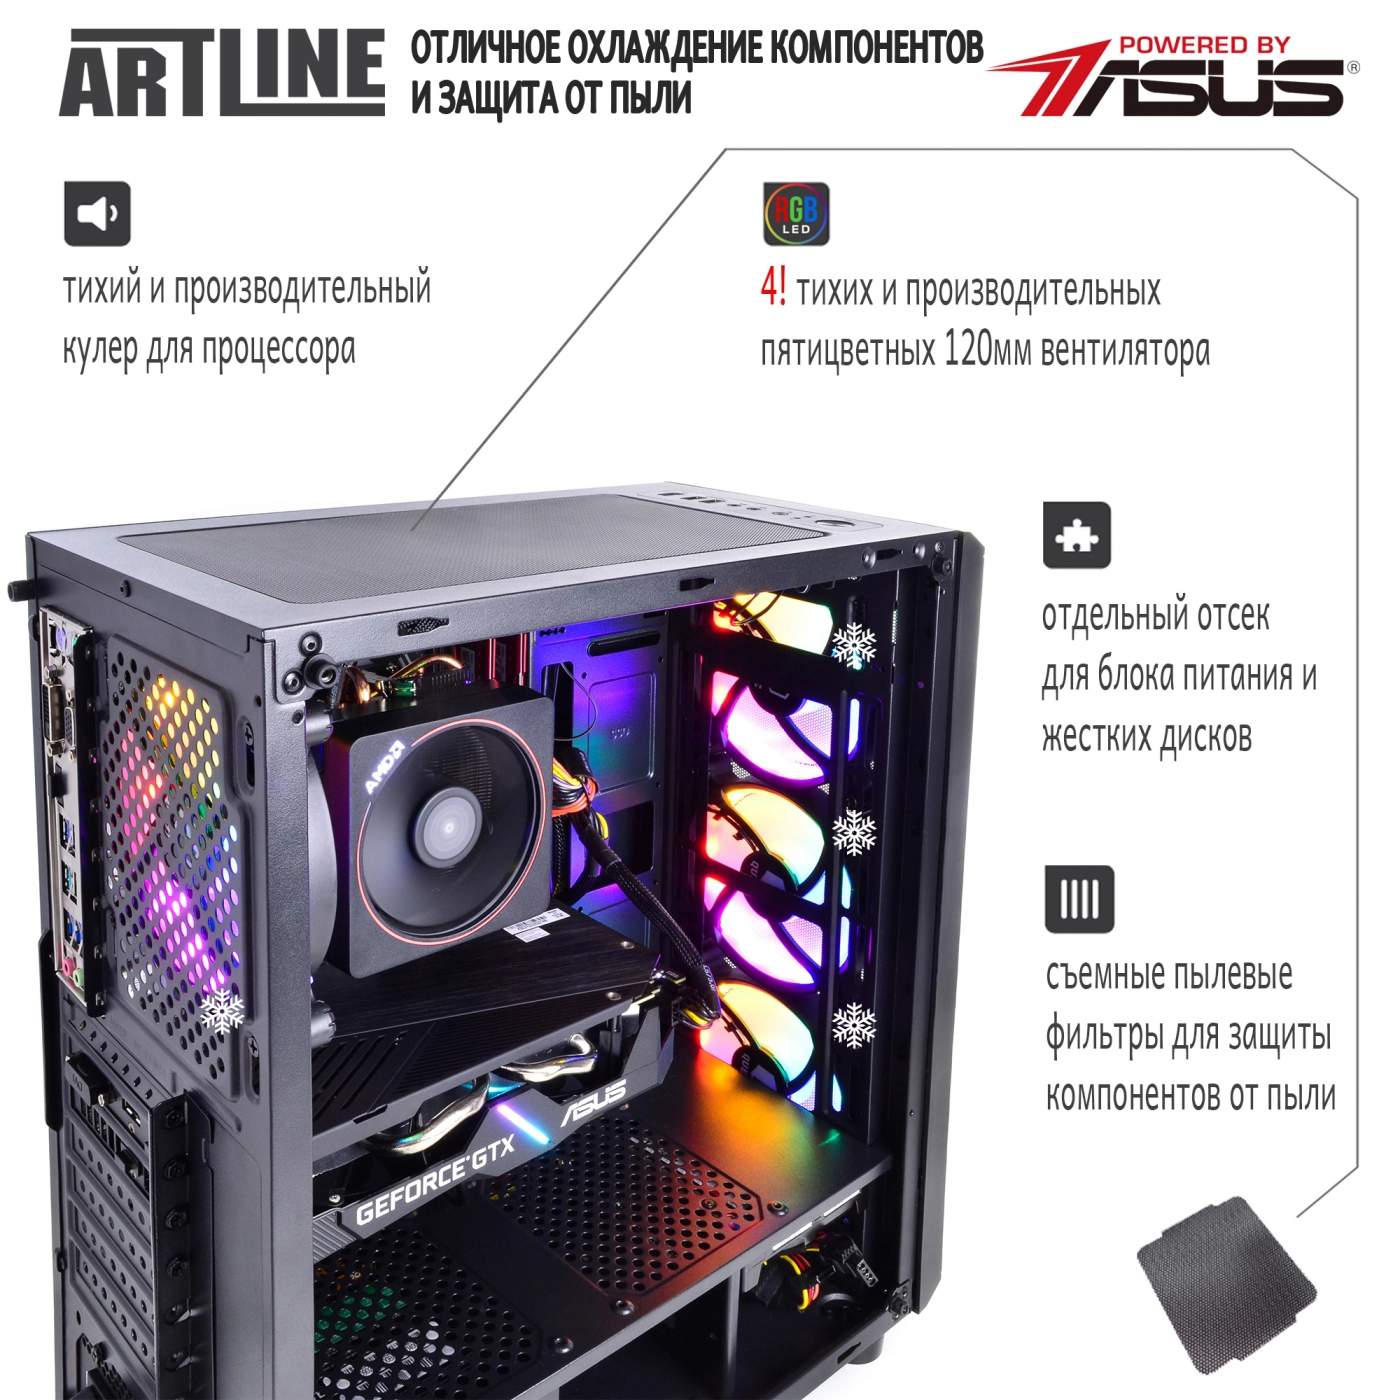 Купить Компьютер ARTLINE Gaming X83v01 - фото 3